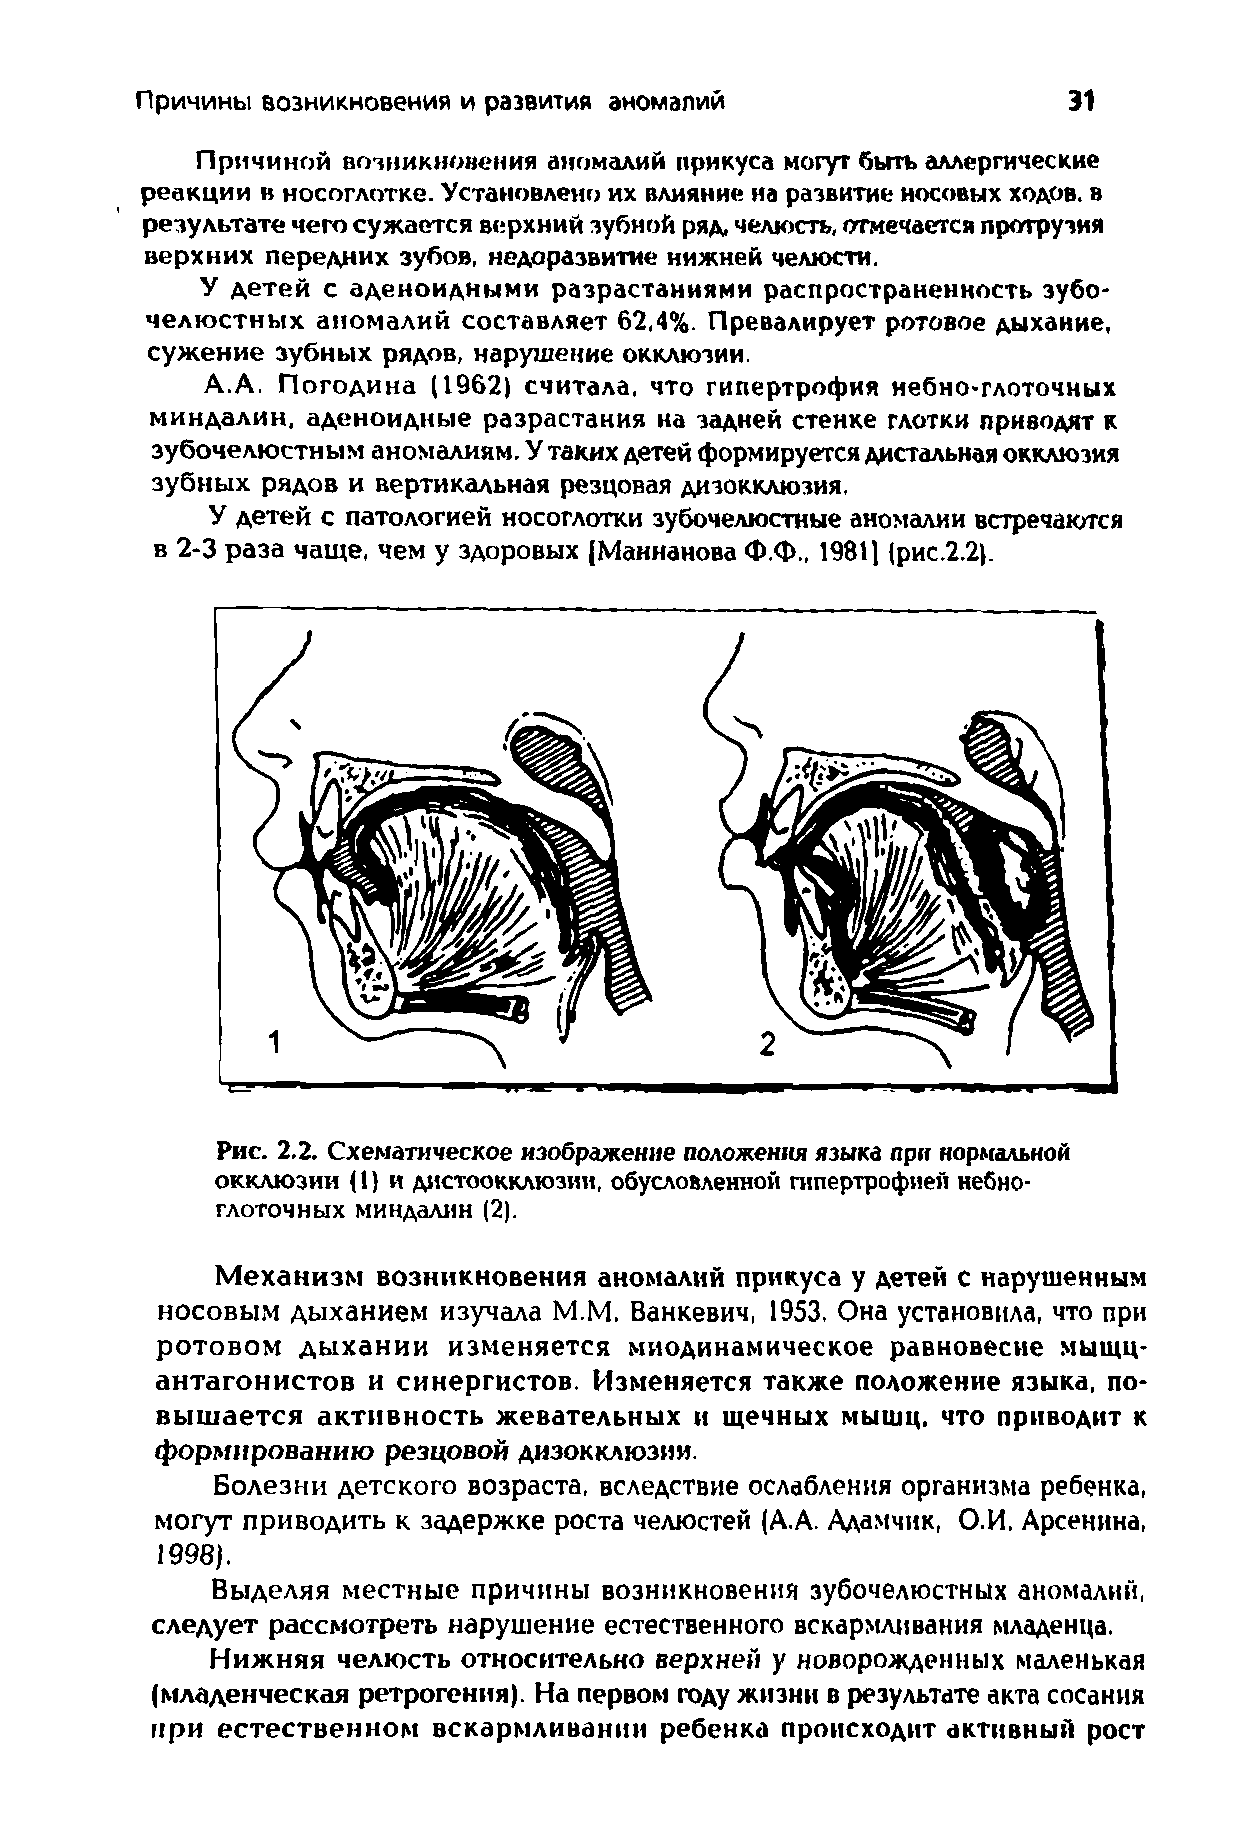 Рис. 2.2. Схематическое изображение положения языка при нормальной окклюзии (1) и дистоокклюзии, обусловленной гипертрофией небно-глоточных миндалин (2).